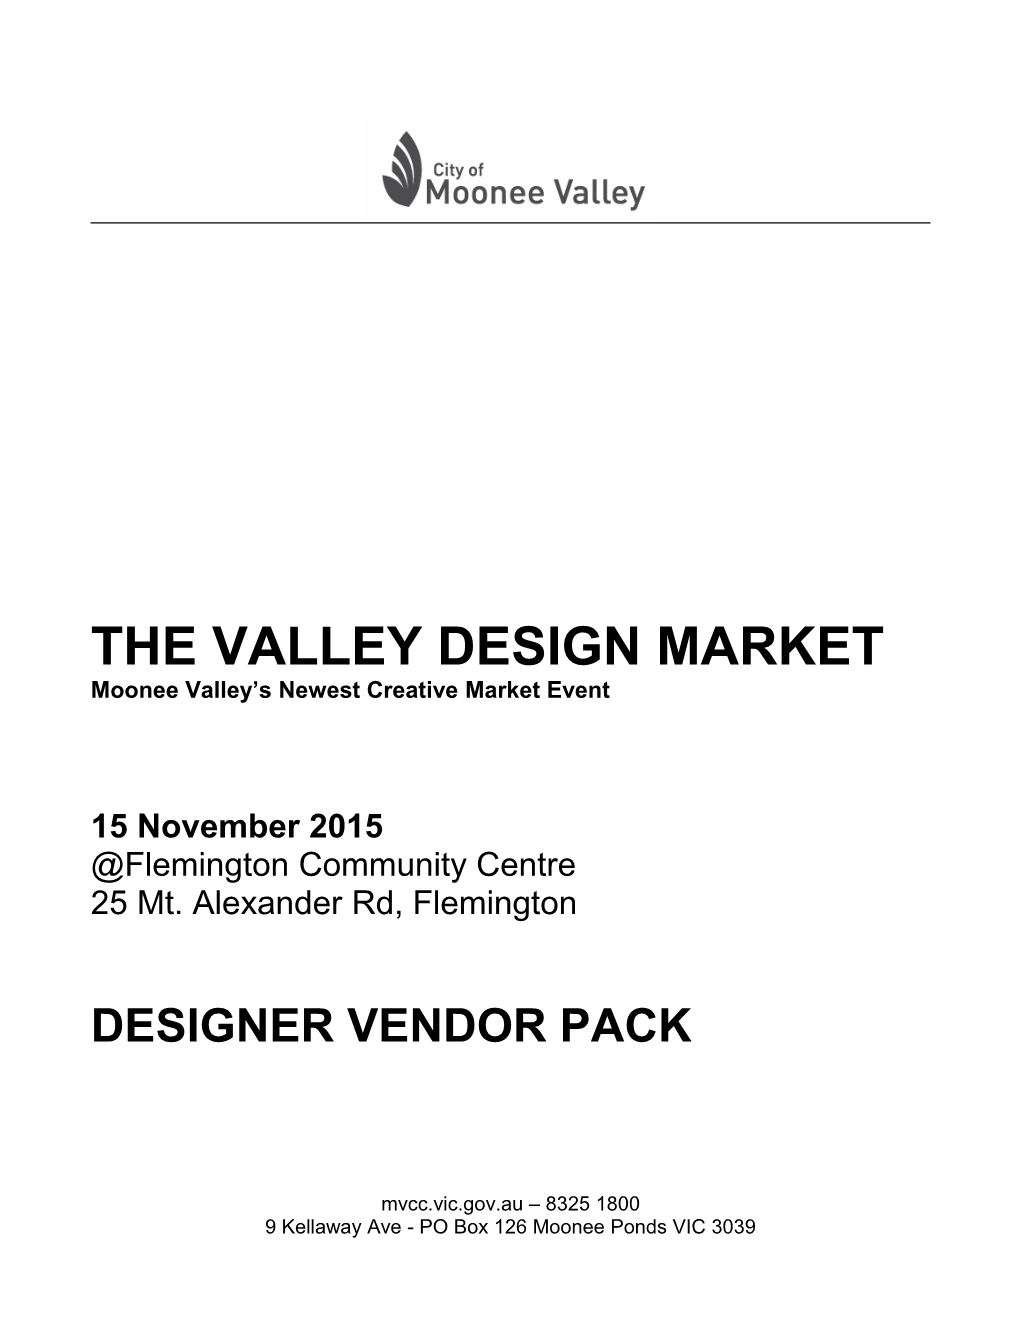 The Valley Design Market